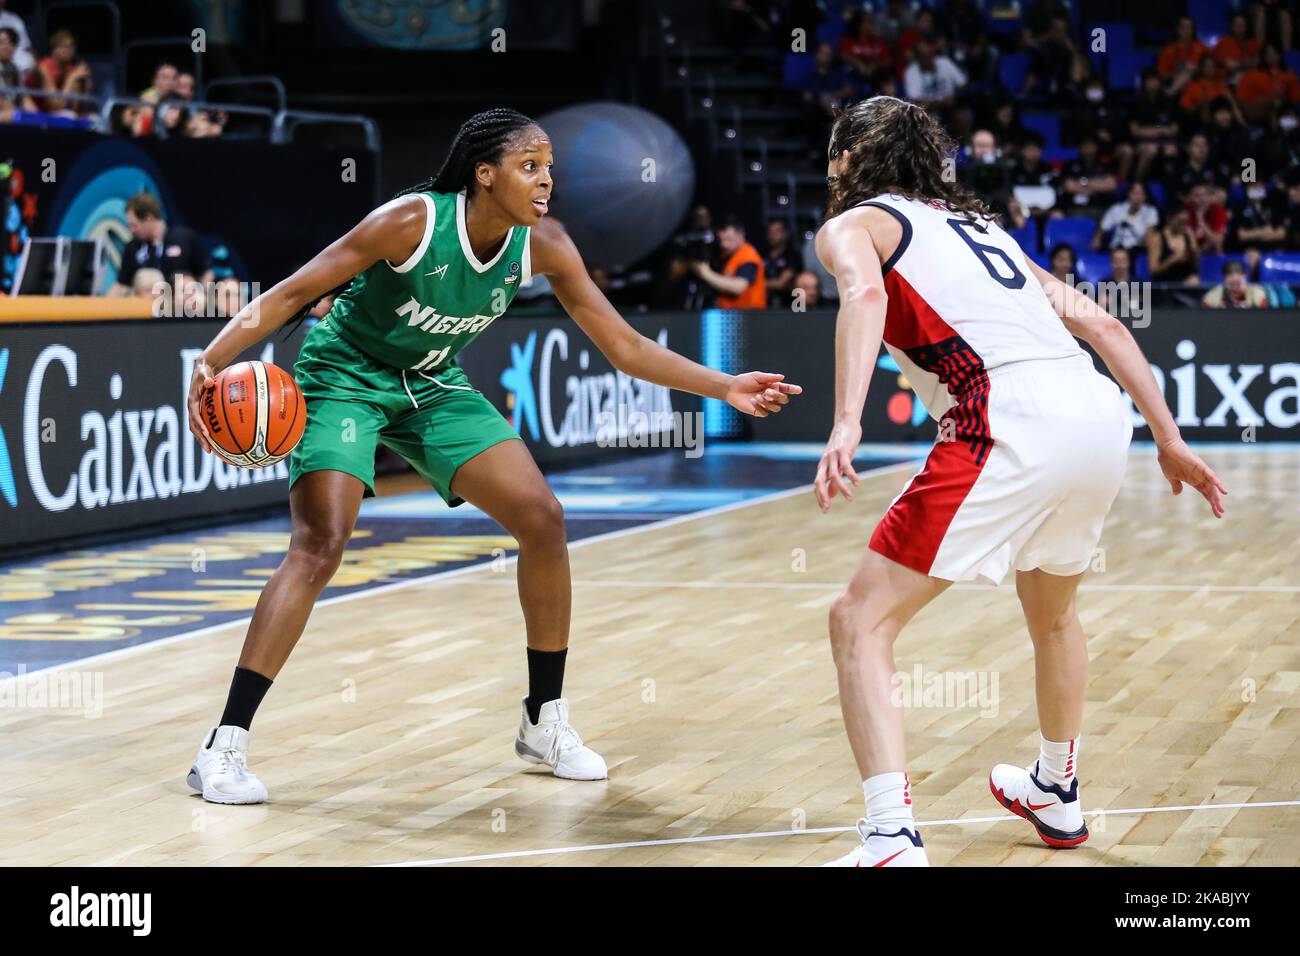 Espagne, Ténérife, 28 septembre 2018: La joueuse de basket-ball nigériane Adaora Elonu en action lors de la coupe du monde de basket-ball féminine FIBA Banque D'Images